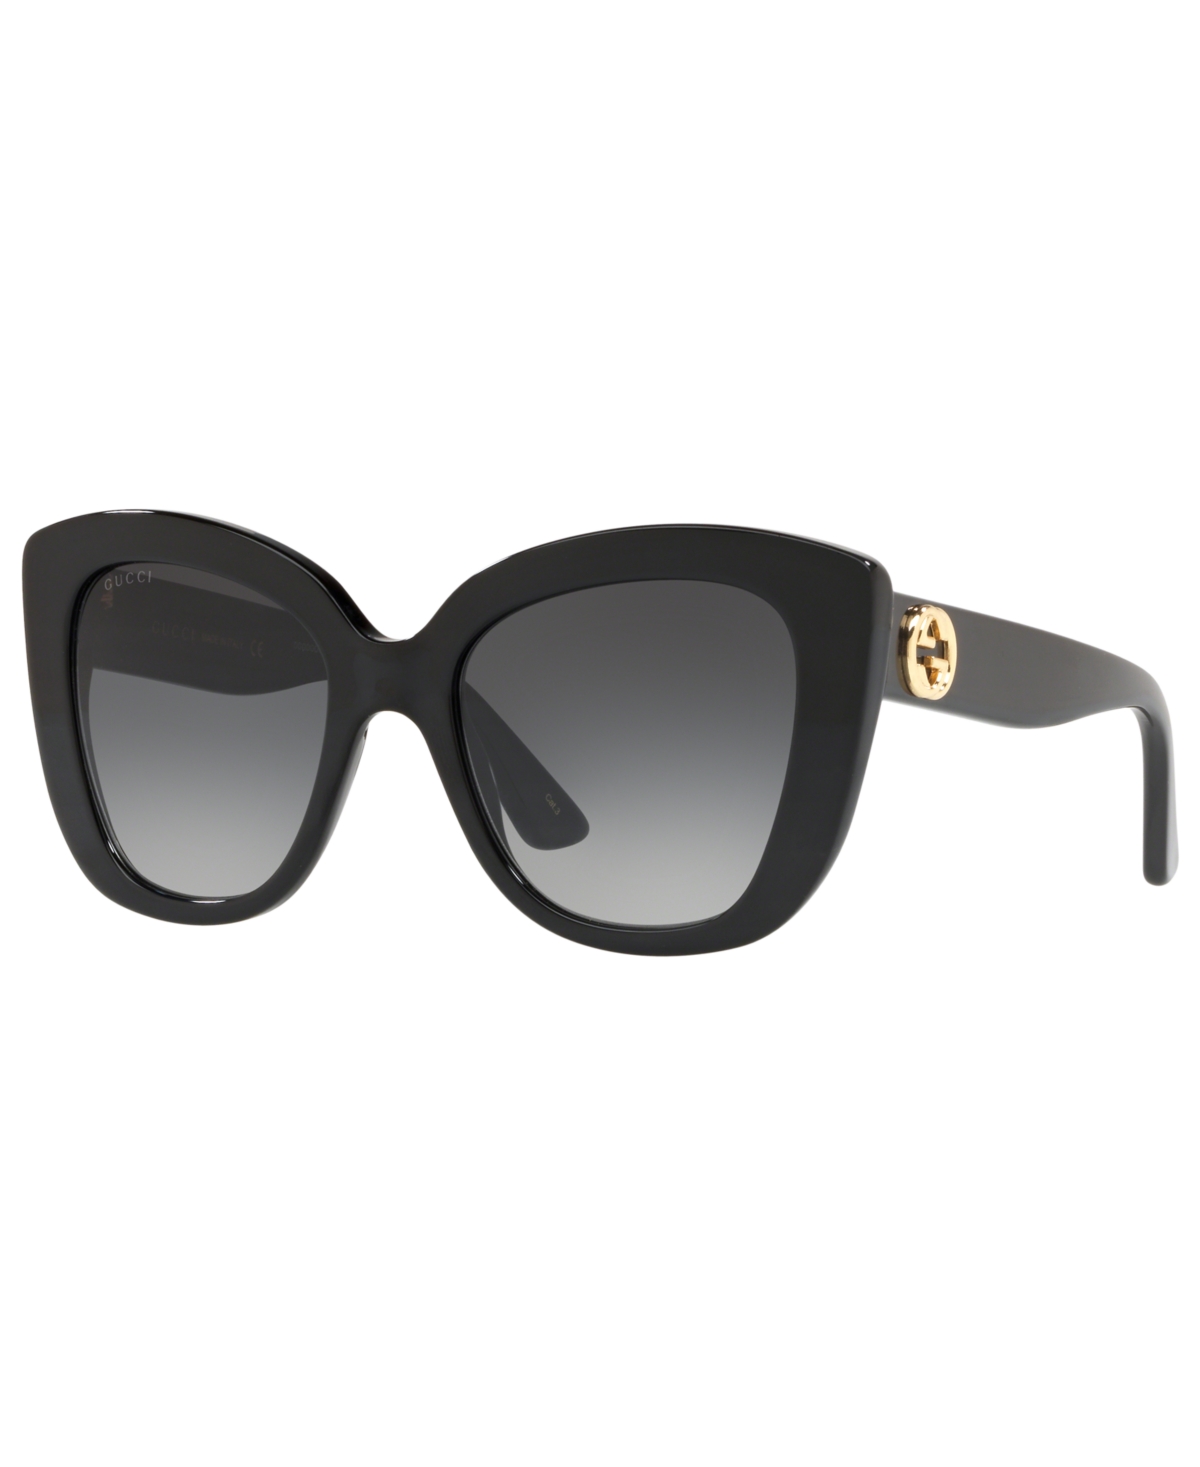 Gucci Sunglasses, Gg0327s In Black Shiny,grey Grad